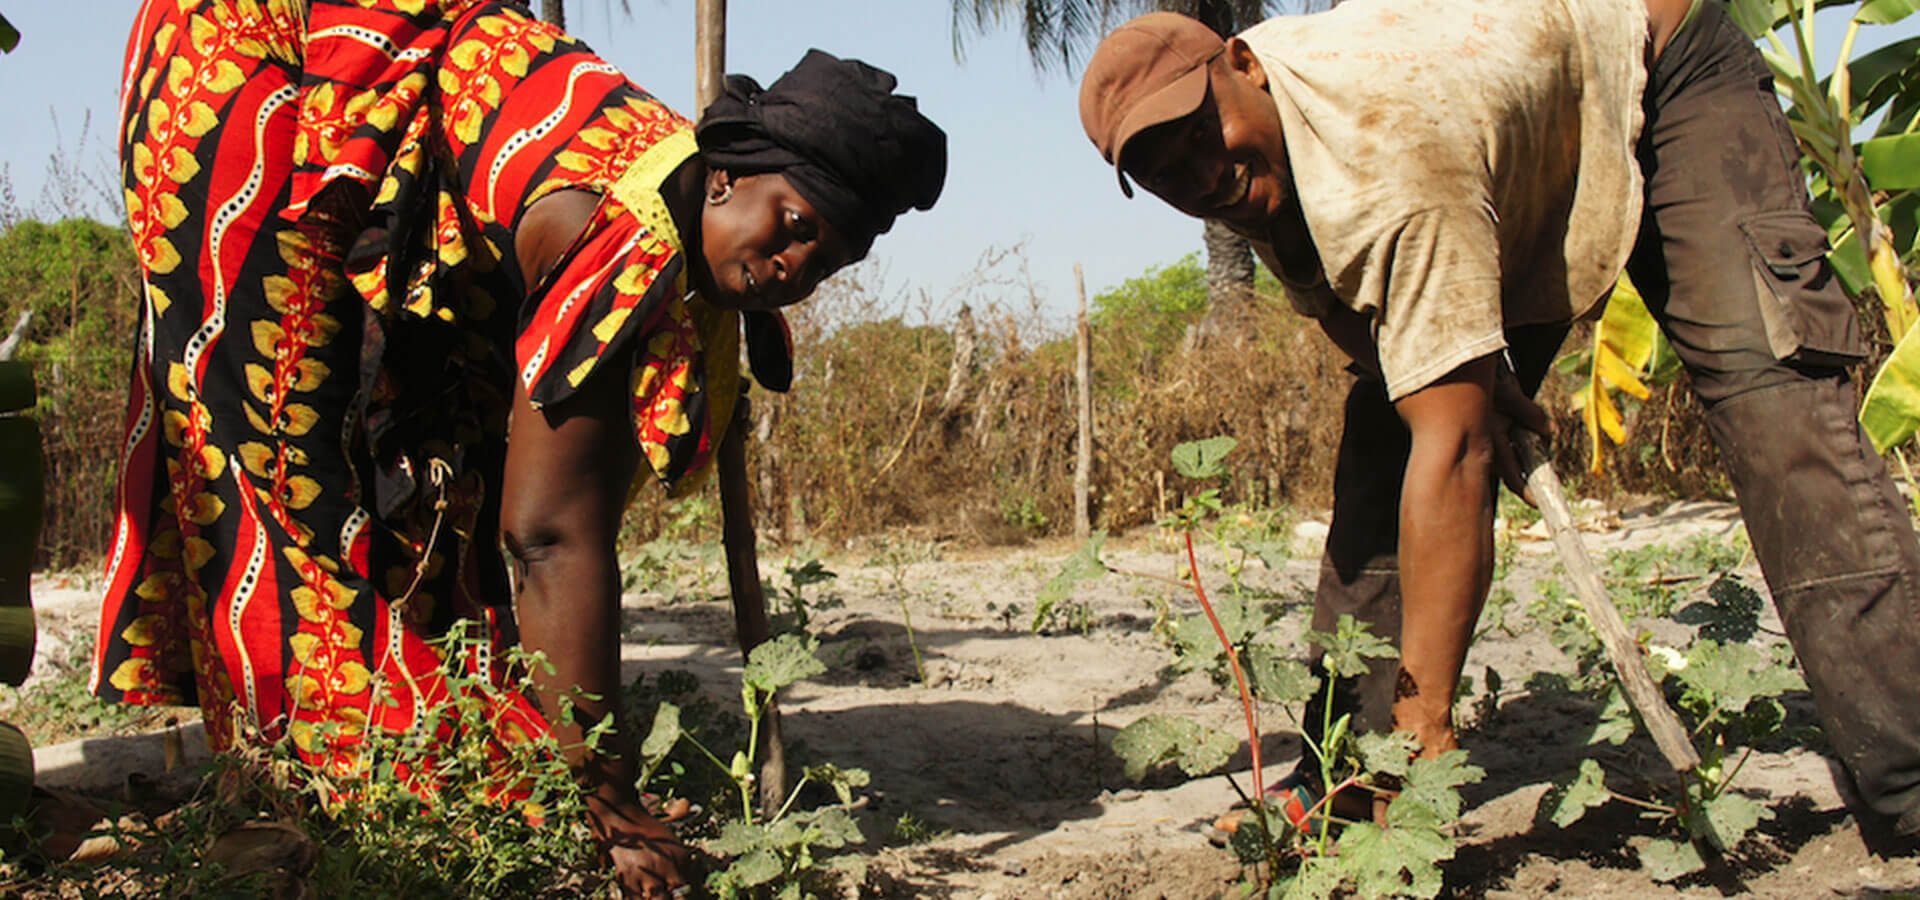 Avvio attività settore agricolo-Senegal e giovani-progetti per restare e ripartire